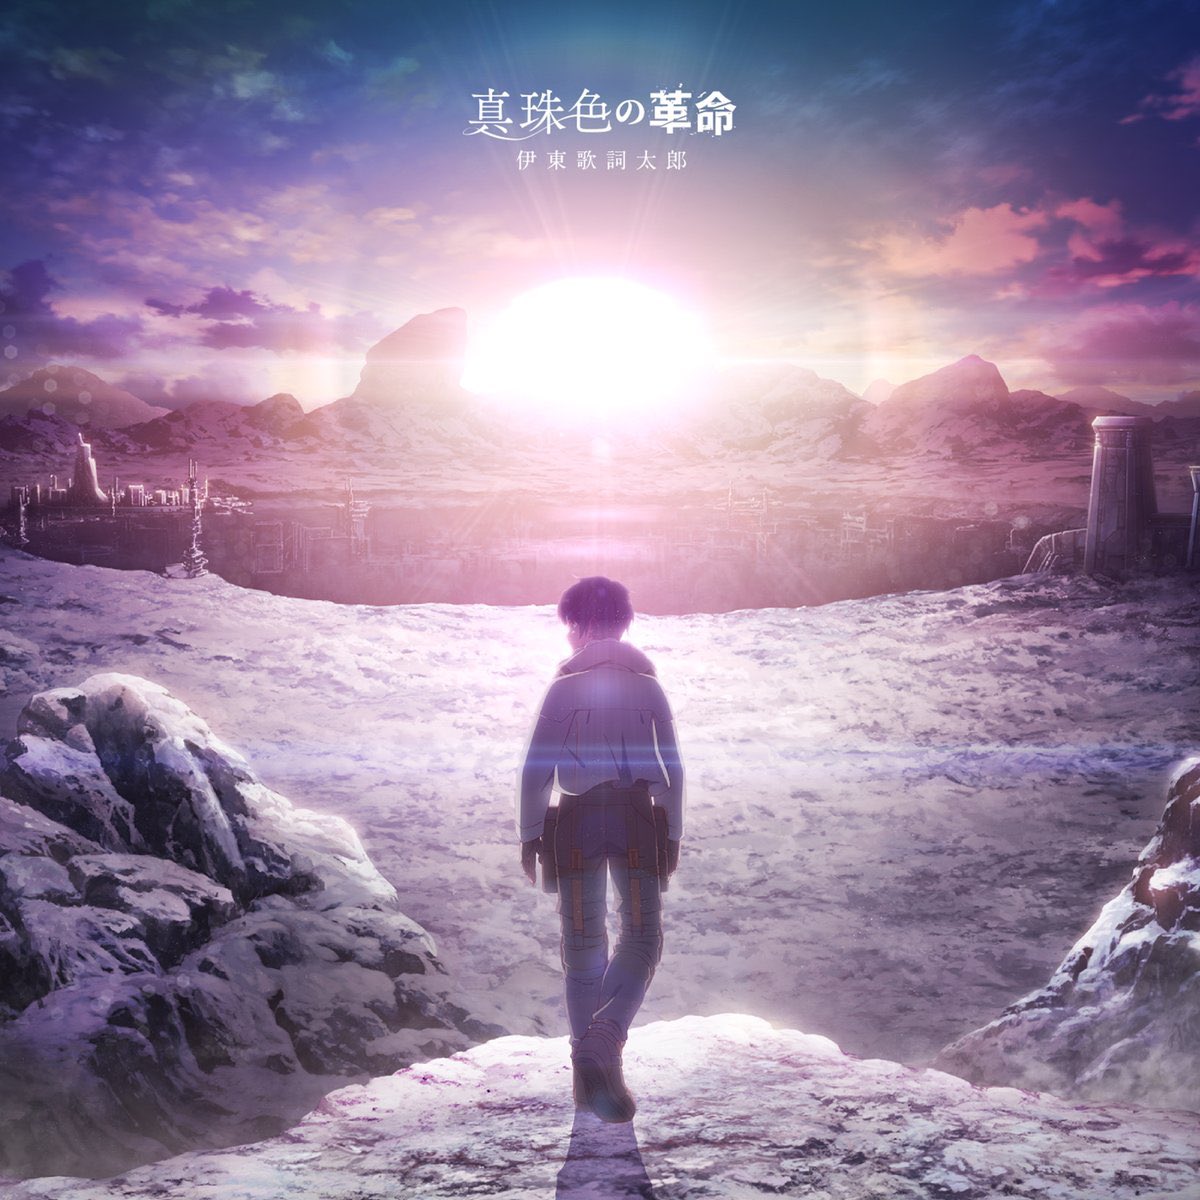 Cover for『Kashitaro Ito - TEL-L』from the release『Shinjuiro no Kakumei』